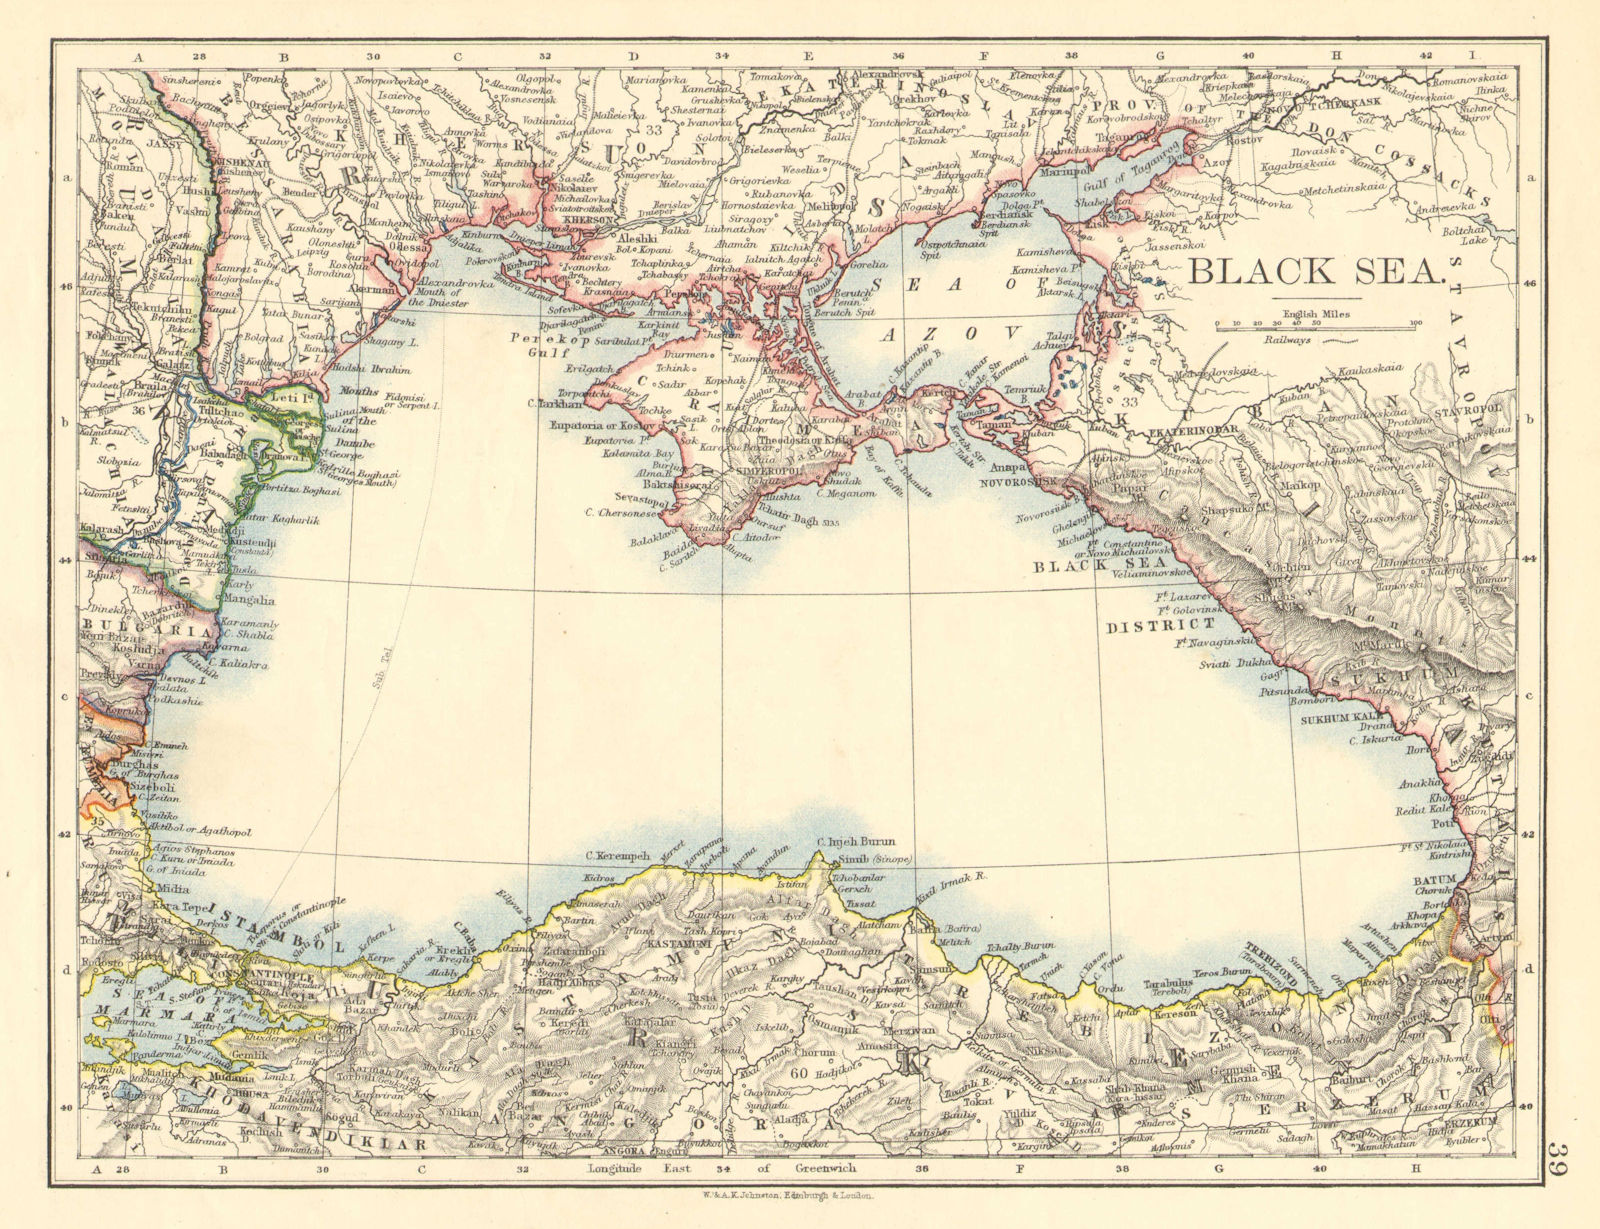 Associate Product BLACK SEA. Russia Turkey Crimea Romania Bulgaria Kutais. JOHNSTON 1899 old map